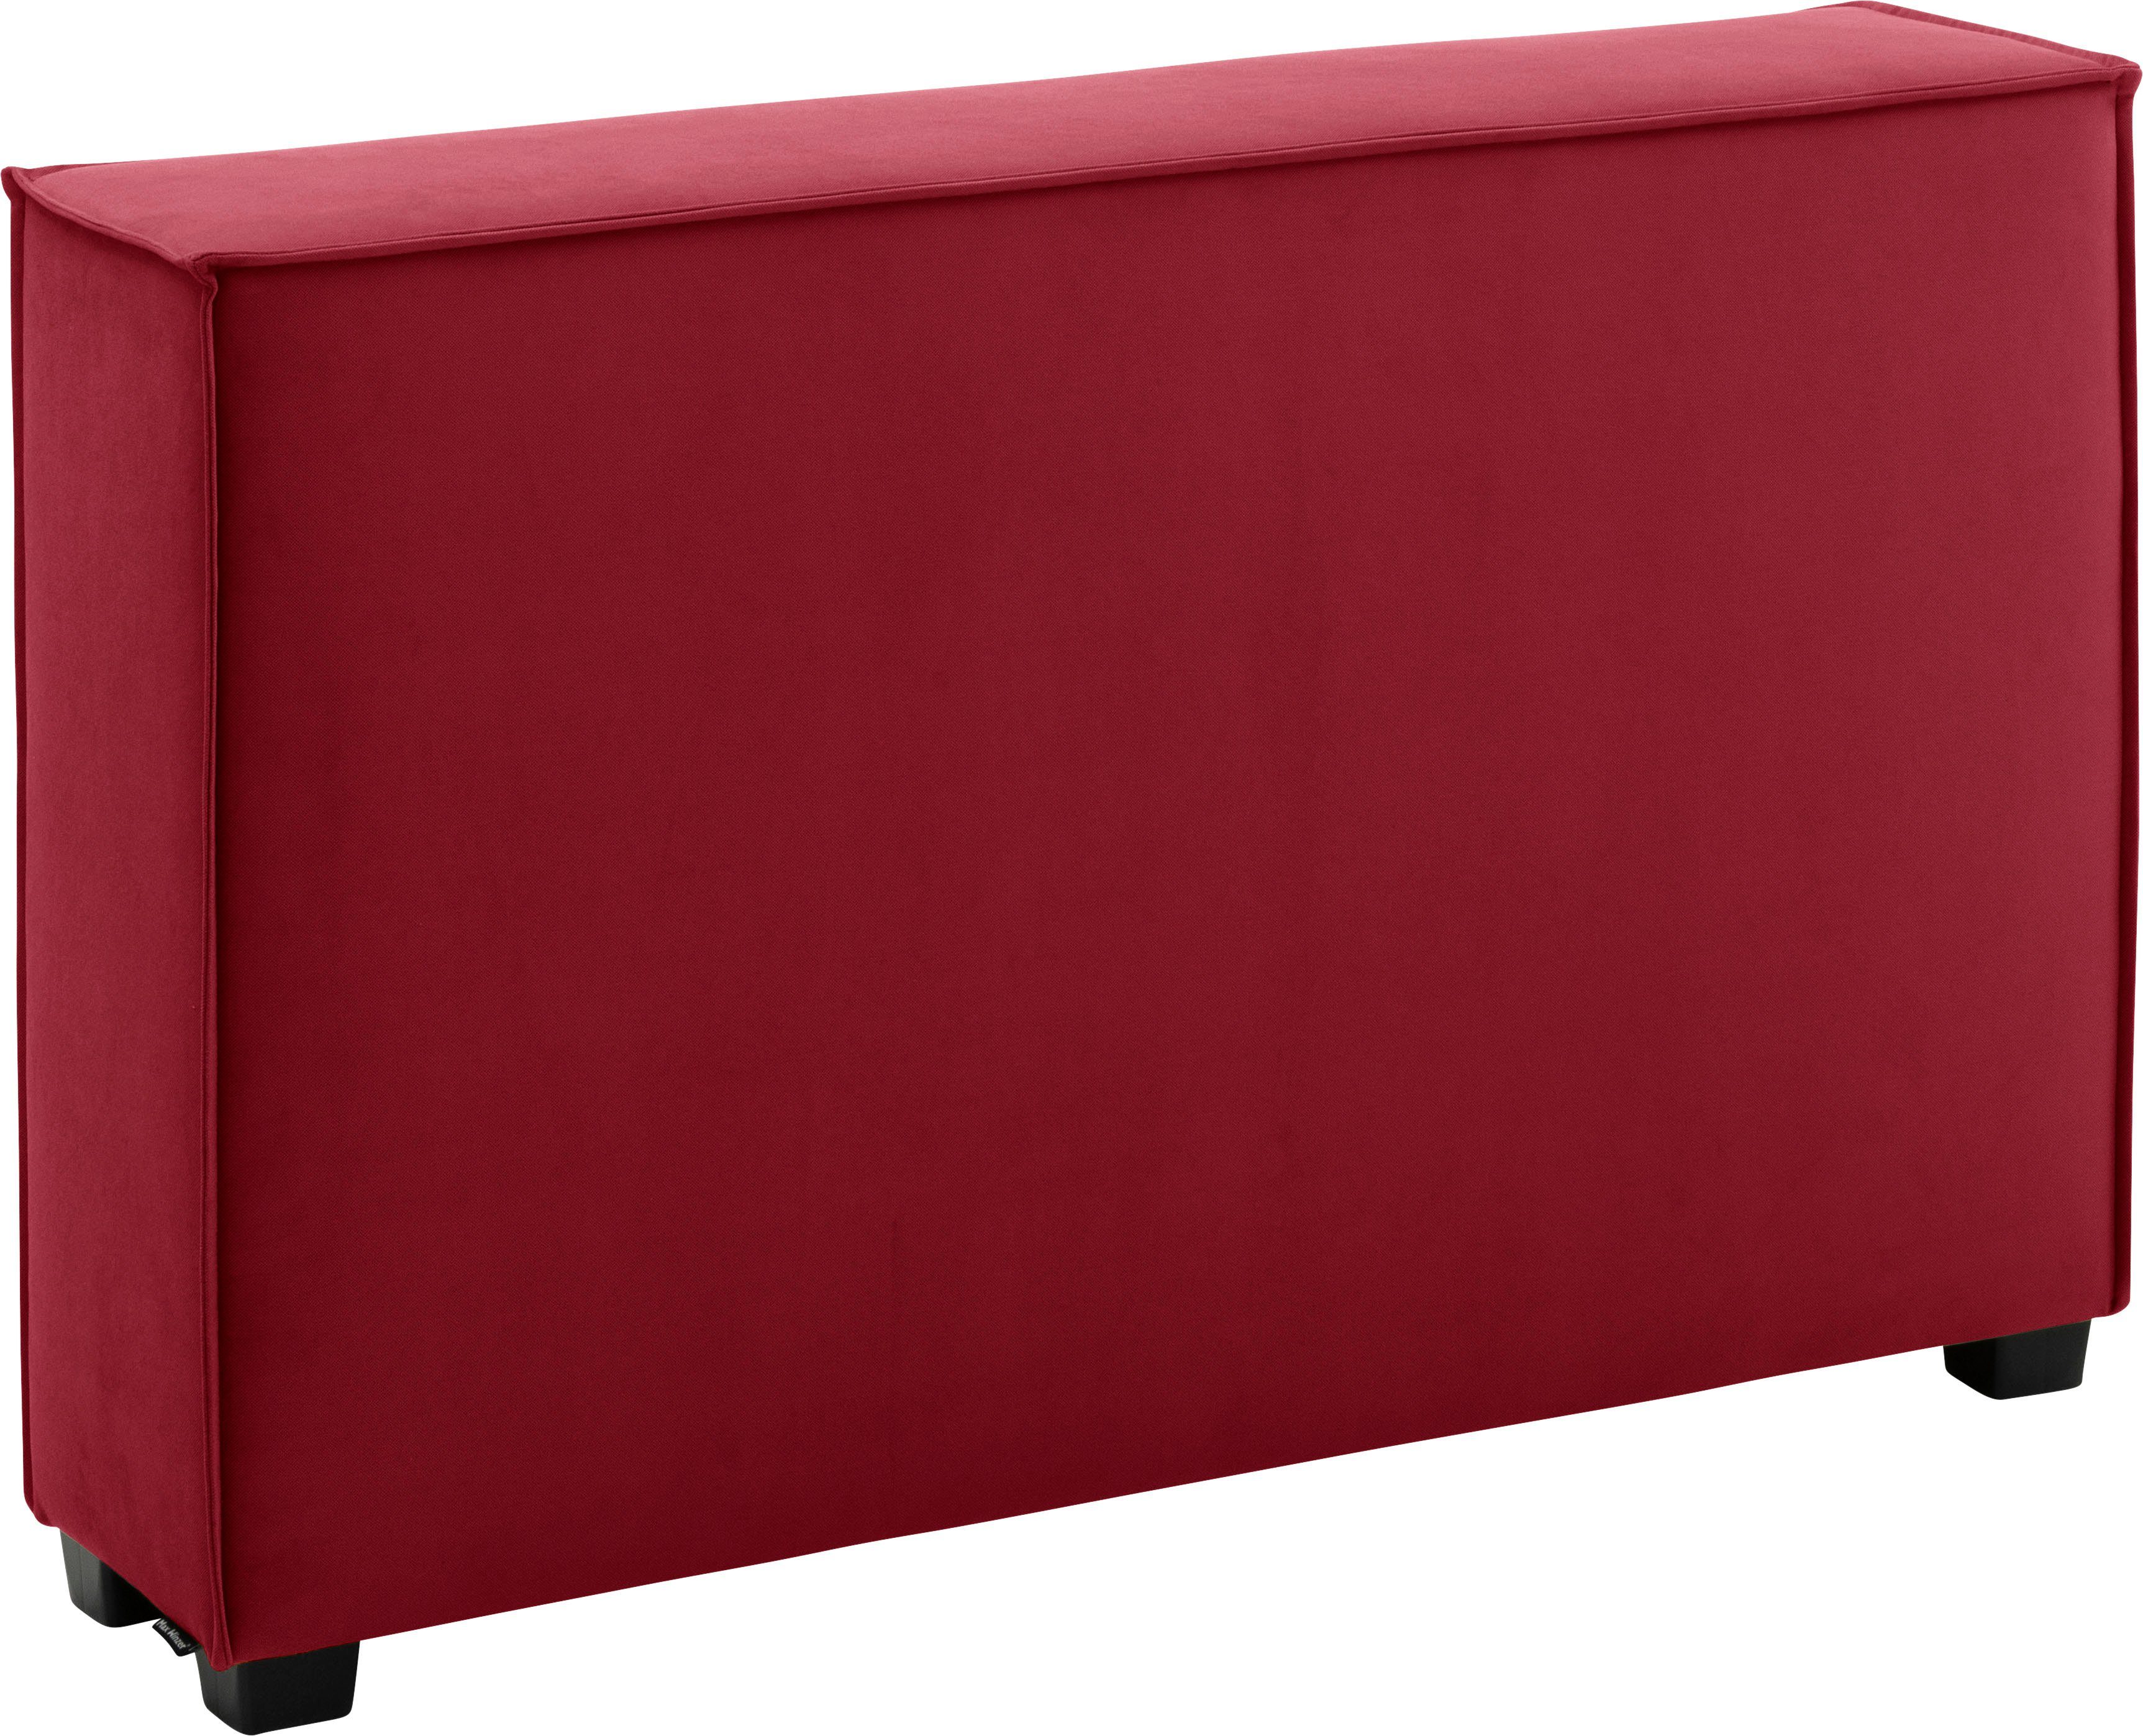 Max Winzer® Sofaelement MOVE, Einzelelement 120/30/78 cm, individuell kombinierbar rot